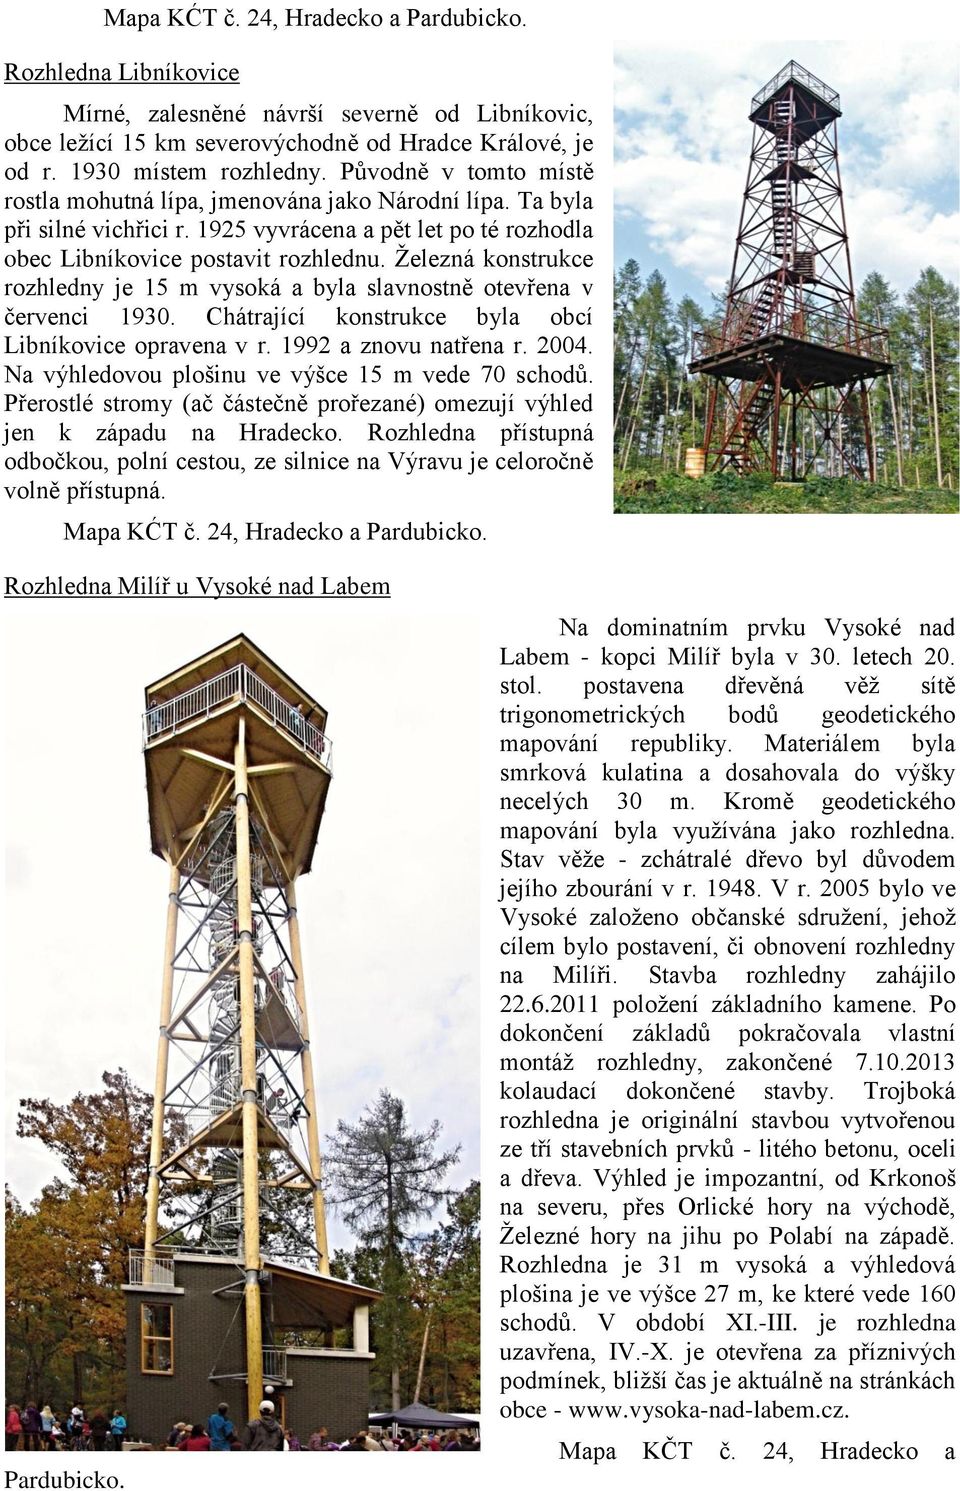 Železná konstrukce rozhledny je 15 m vysoká a byla slavnostně otevřena v červenci 1930. Chátrající konstrukce byla obcí Libníkovice opravena v r. 1992 a znovu natřena r. 2004.